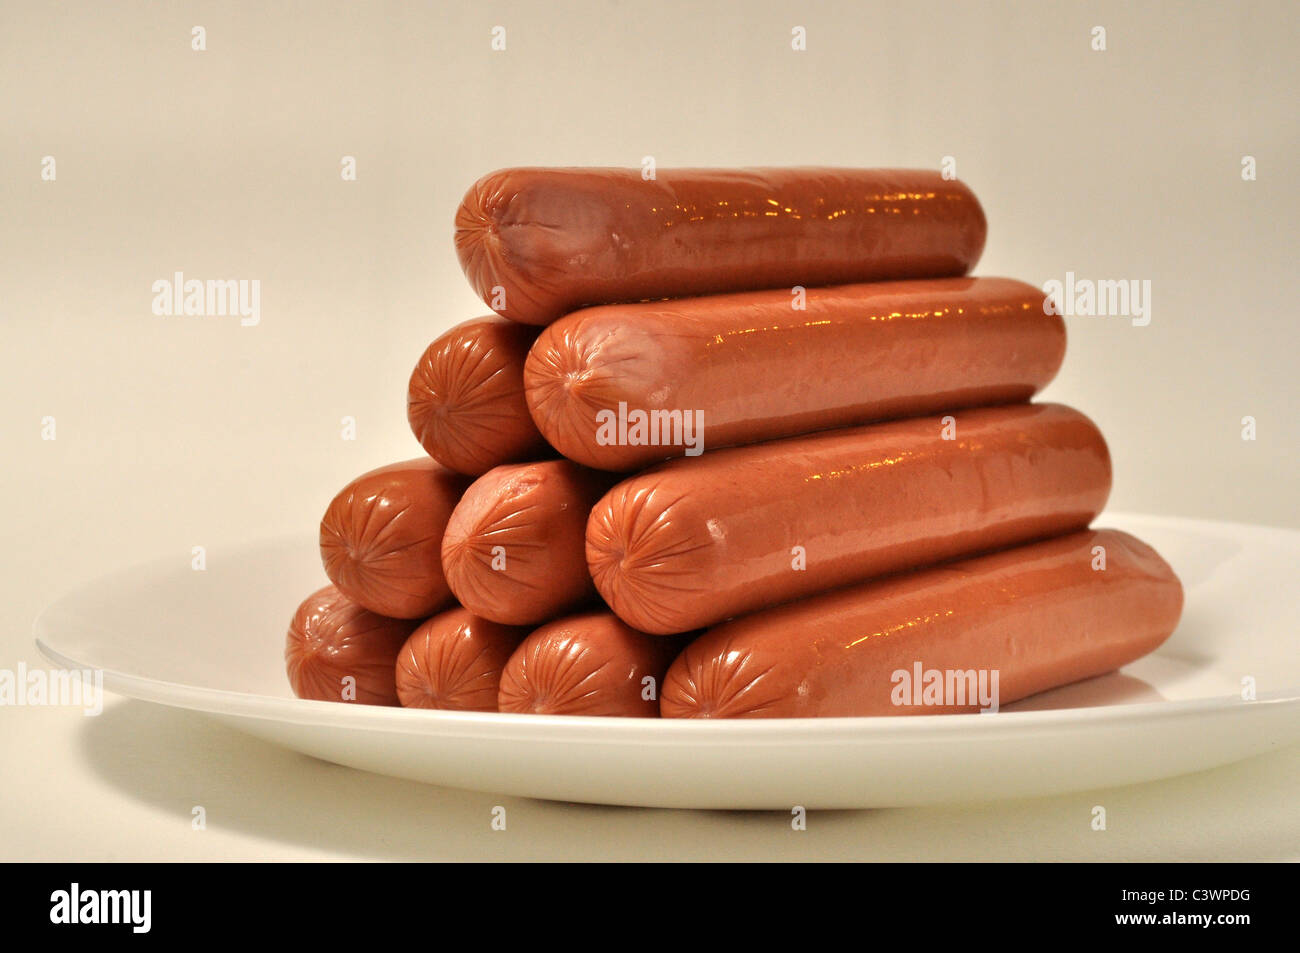 Ein Haufen von Hot Dogs auf einem weißen Teller Stockfoto